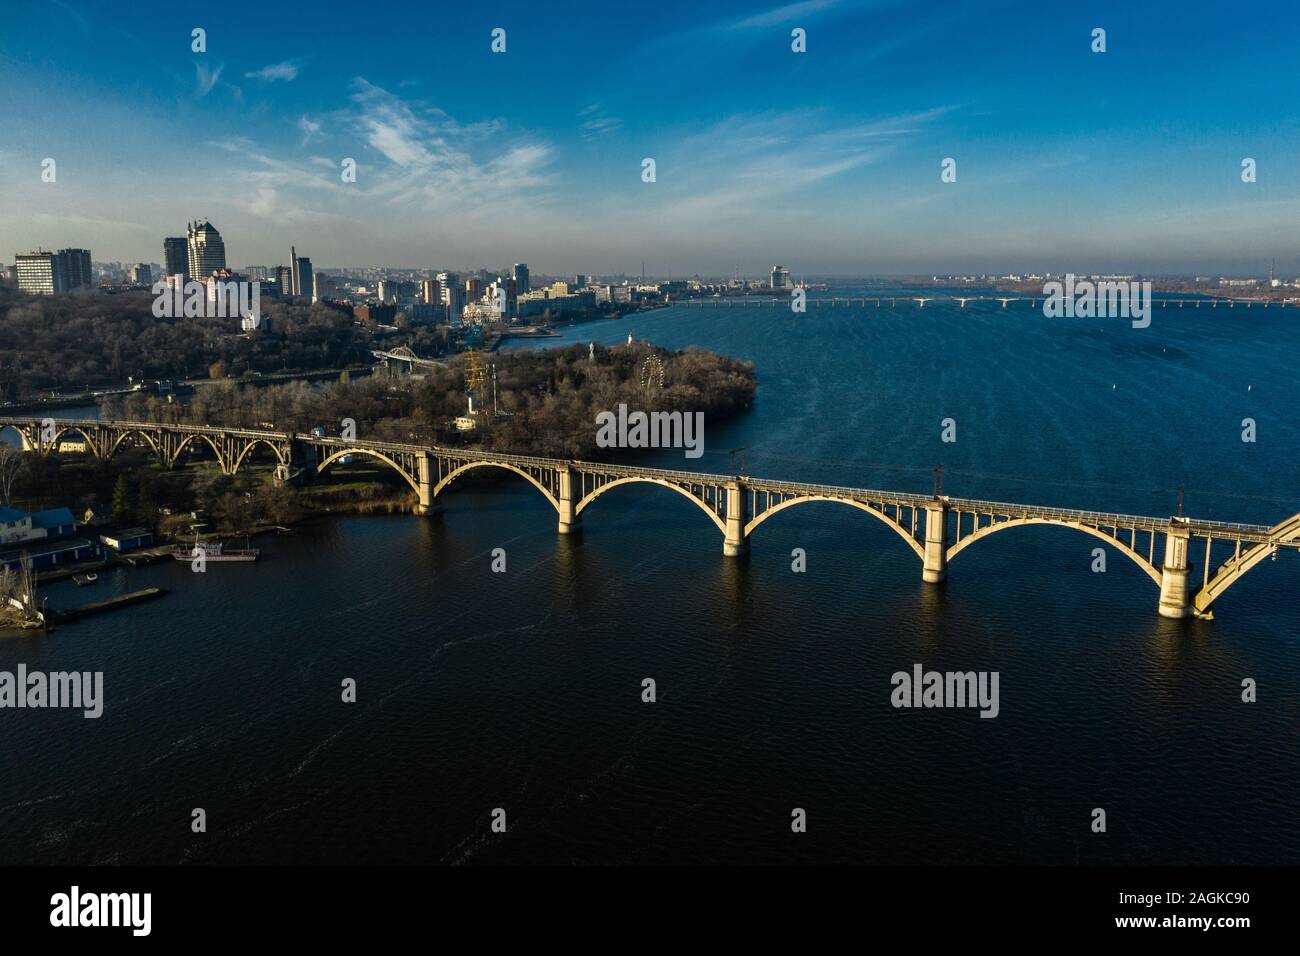 Antenne Panoramaaussicht auf alten arch Eisenbahn Merefo-Kherson Brücke über den Fluss Dnepr in Dnipropetrowsk. Blick auf dem rechten Ufer des Dnipro. Stockfoto